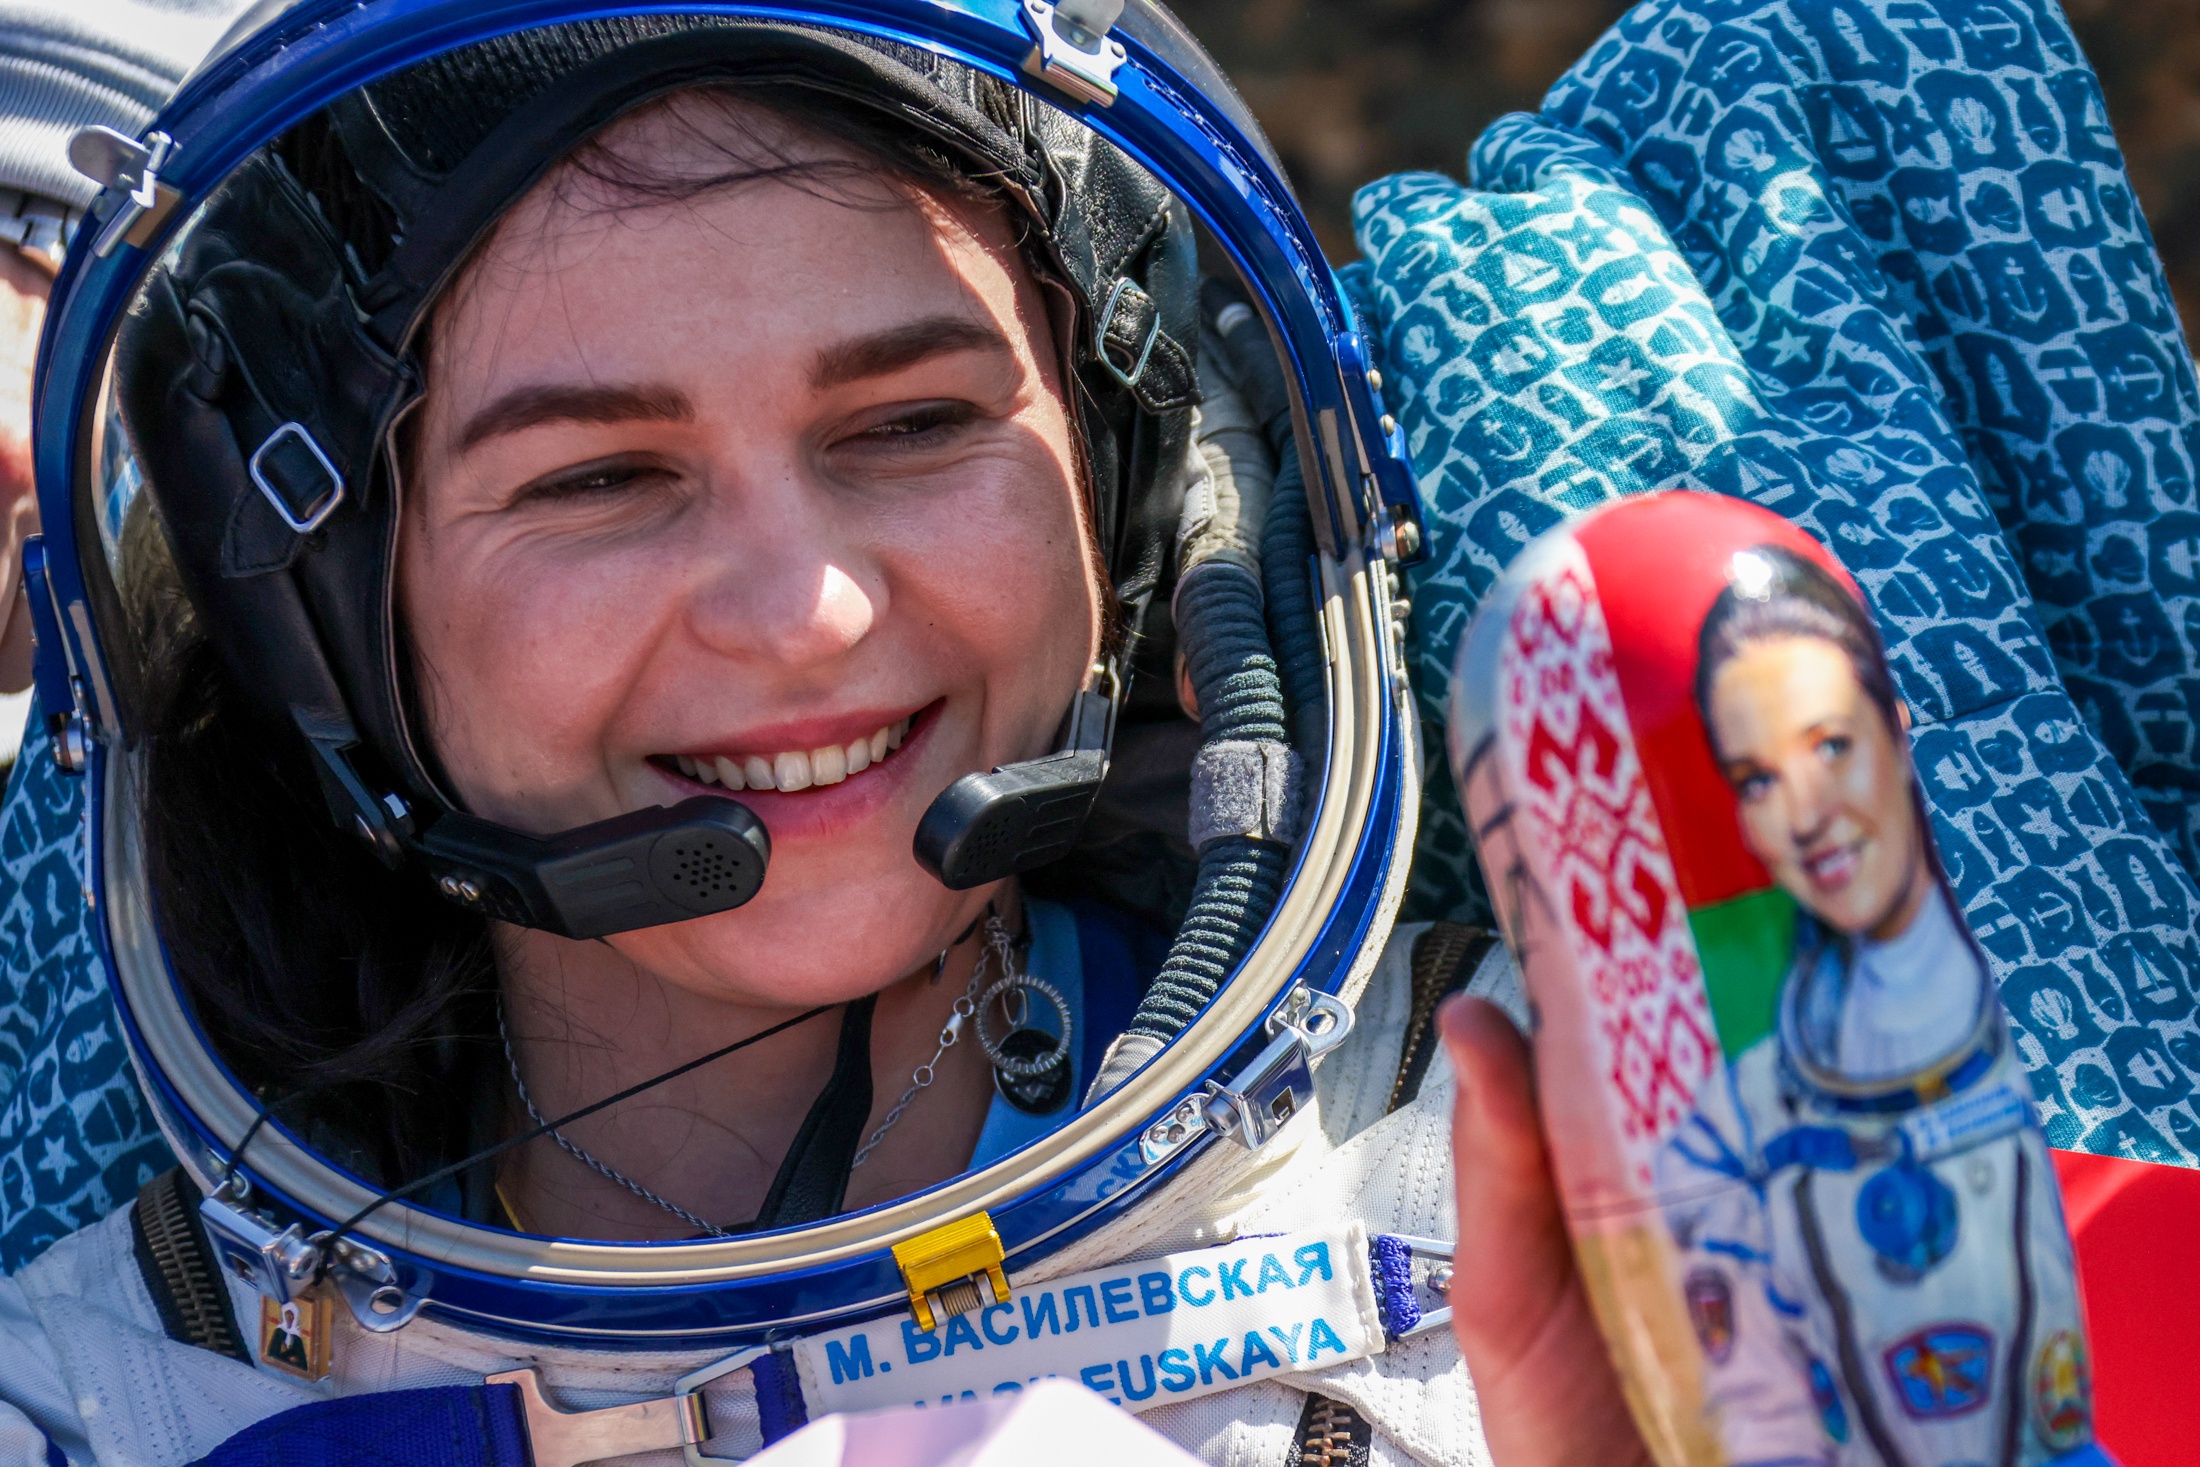 В Минске ожидают встречи с космонавтом Мариной Василевской